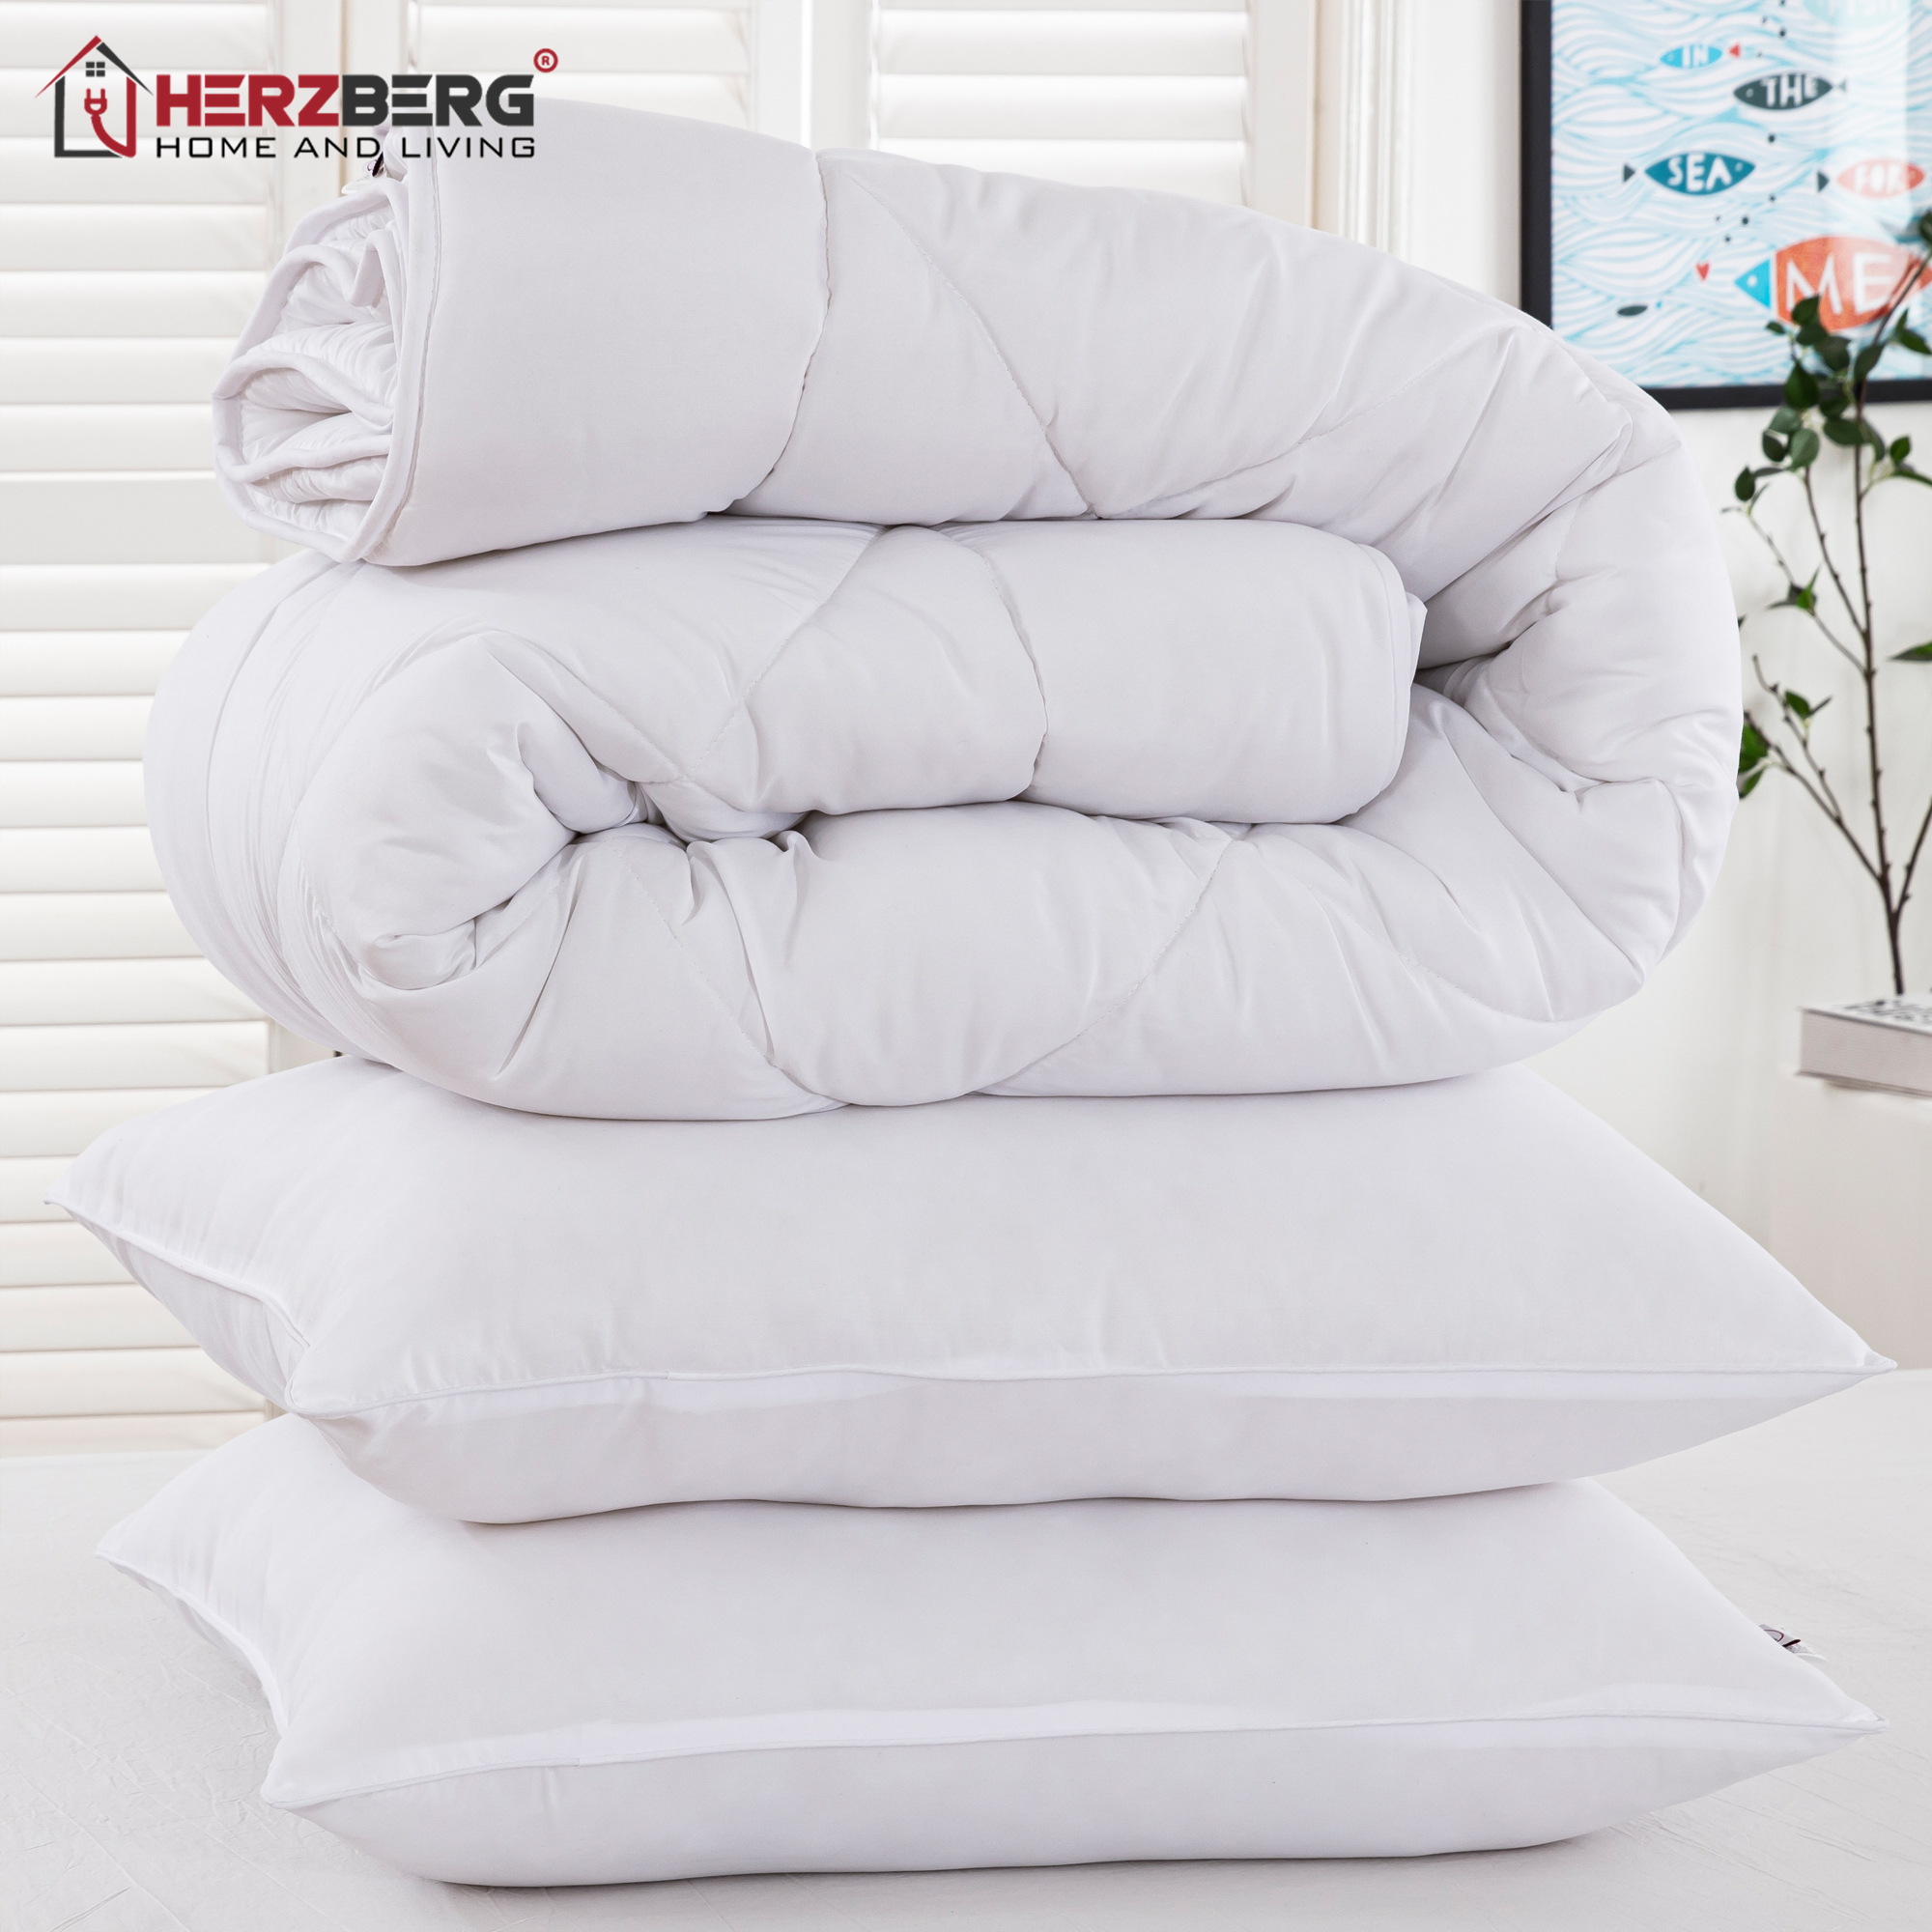 Herzberg HG-14267D: White Microfiber Bedding Set(Duvet+2Pillows) - 140x200cm